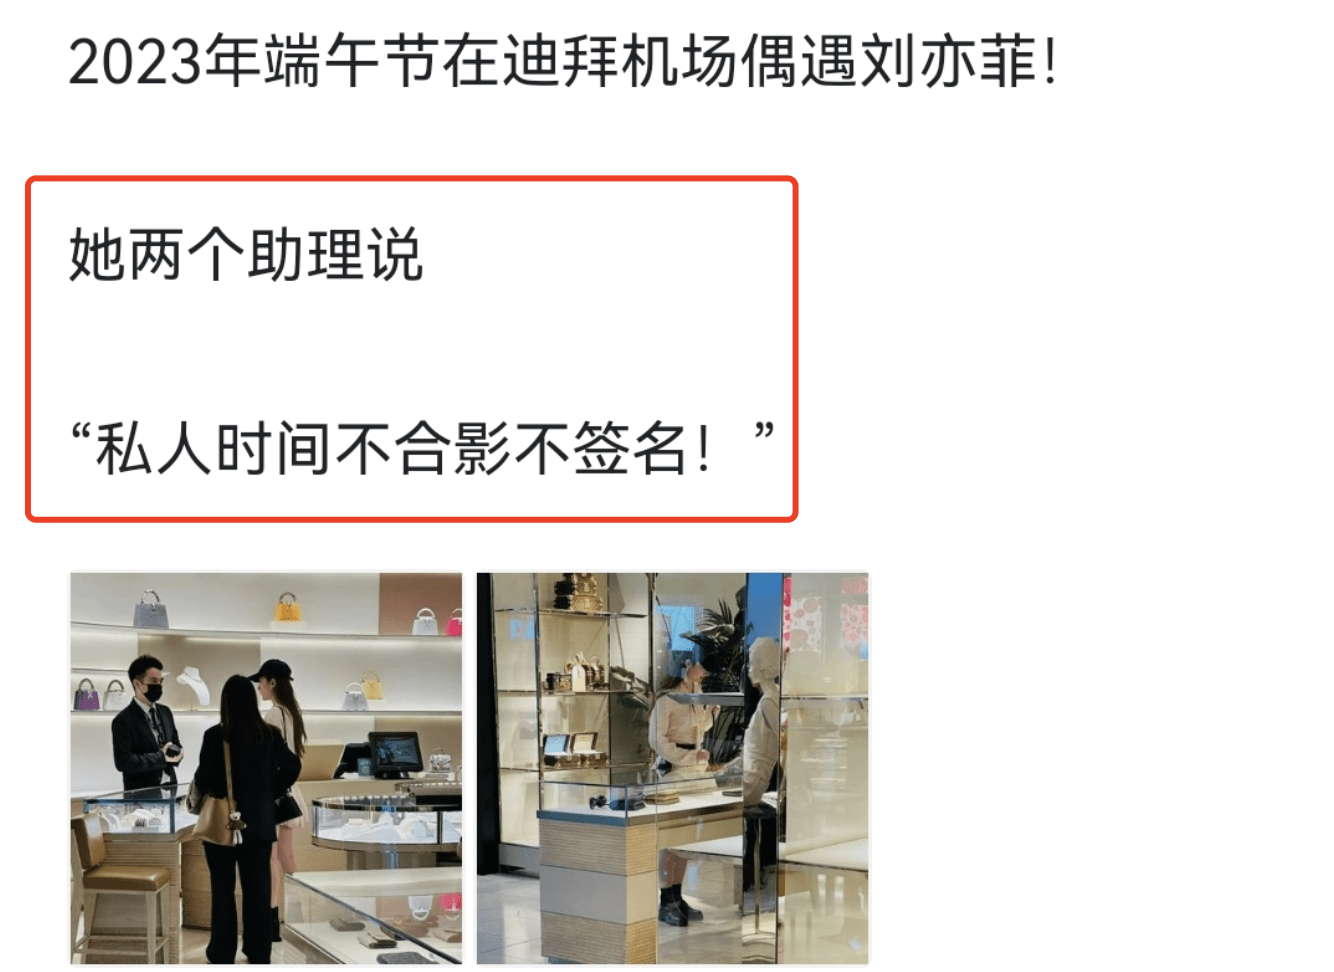  刘亦菲迪拜被偶遇，逛奢侈品店身边跟2个助理，拒合影签名惹争议 